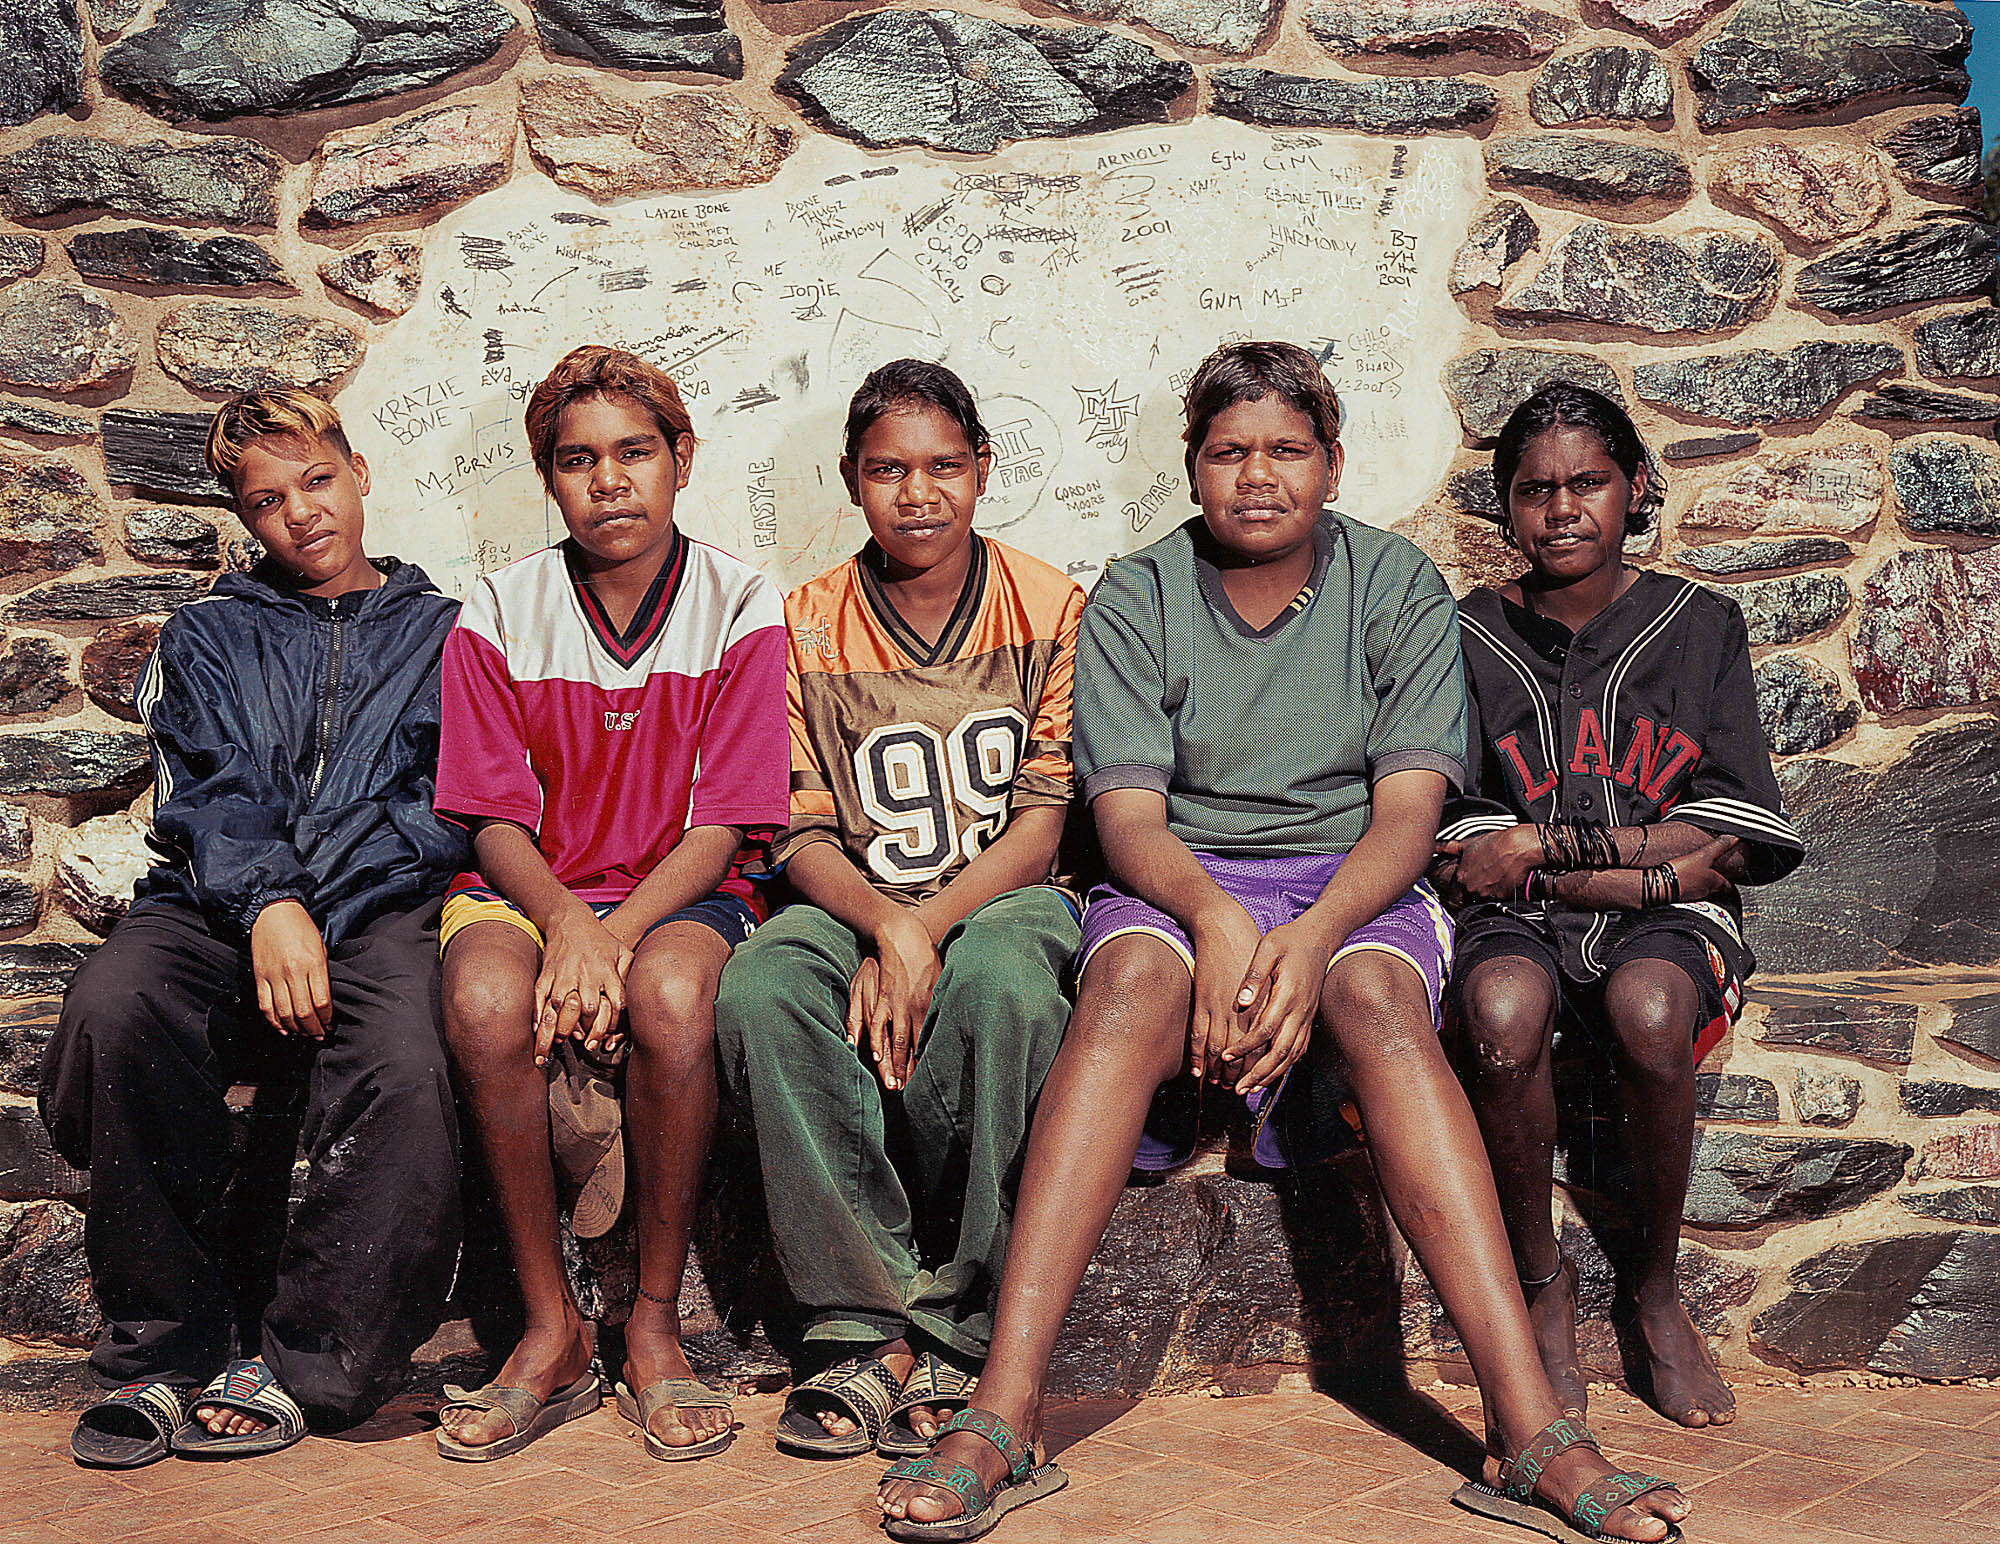 Dalits and Aboriginals: Rebuilding India and Australia 